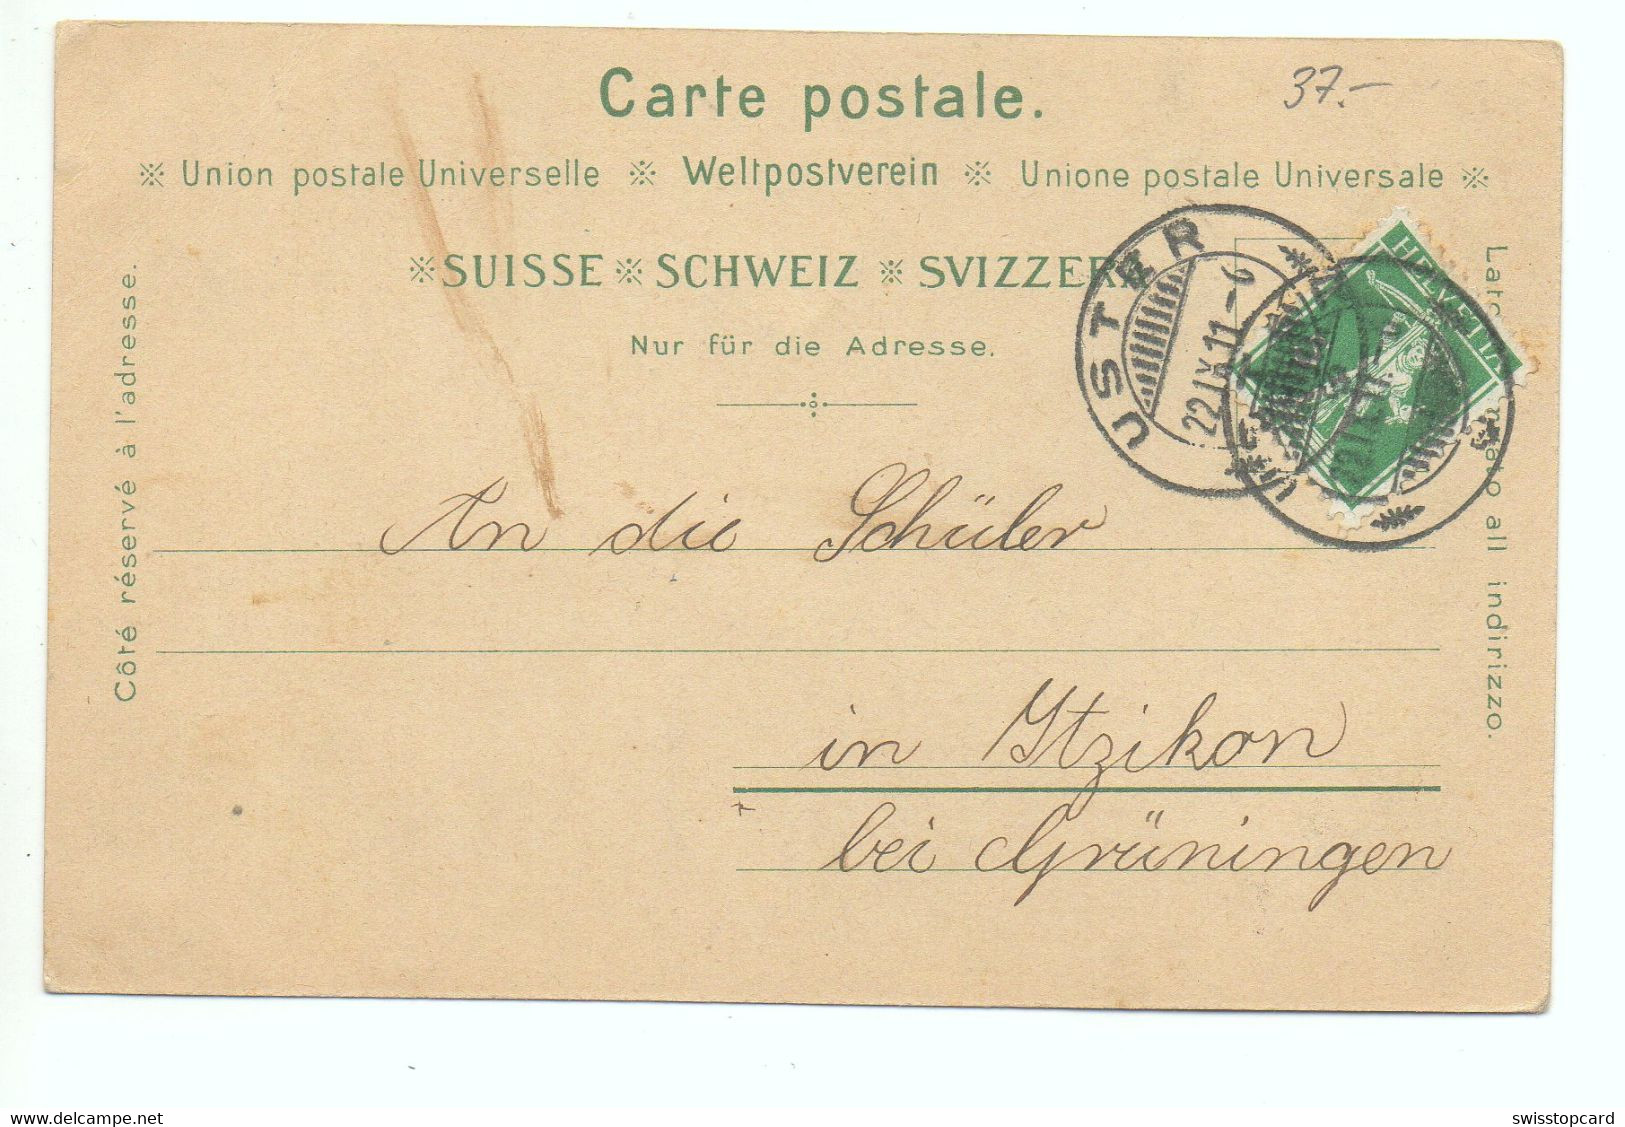 LITHO Gruss Aus USTER Jugendstil Primar Schulhaus Kath. Kirche Verlag Hörbert Uster No. 4592 Gel. 1911 N. Itzikon - Uster